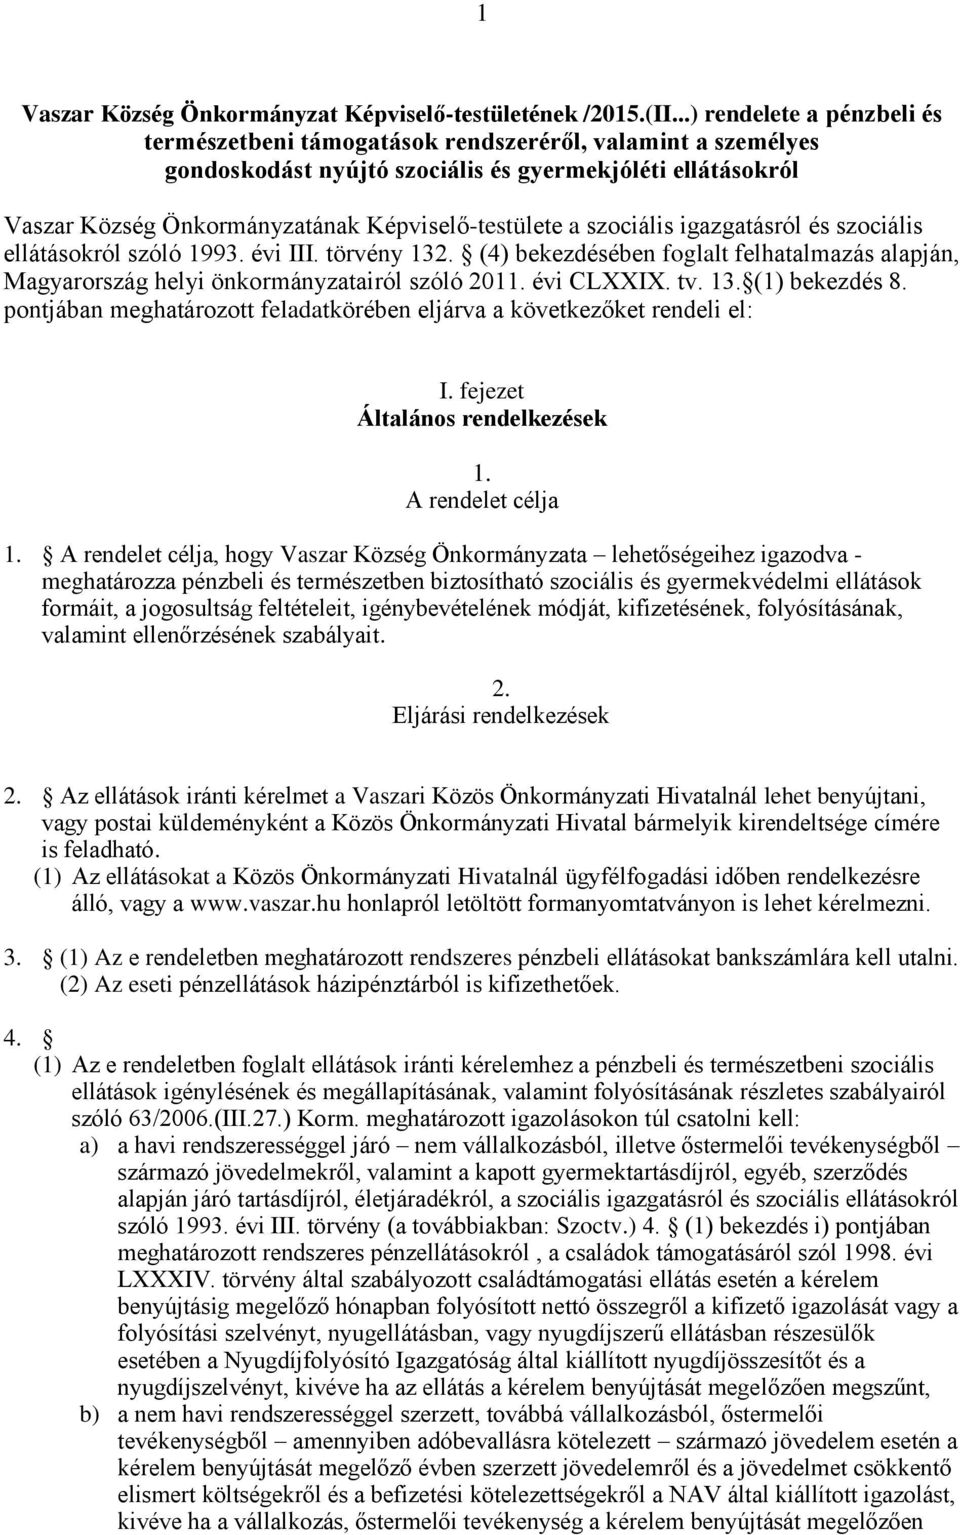 a szociális igazgatásról és szociális ellátásokról szóló 1993. évi III. törvény 132. (4) bekezdésében foglalt felhatalmazás alapján, Magyarország helyi önkormányzatairól szóló 2011. évi CLXXIX. tv.